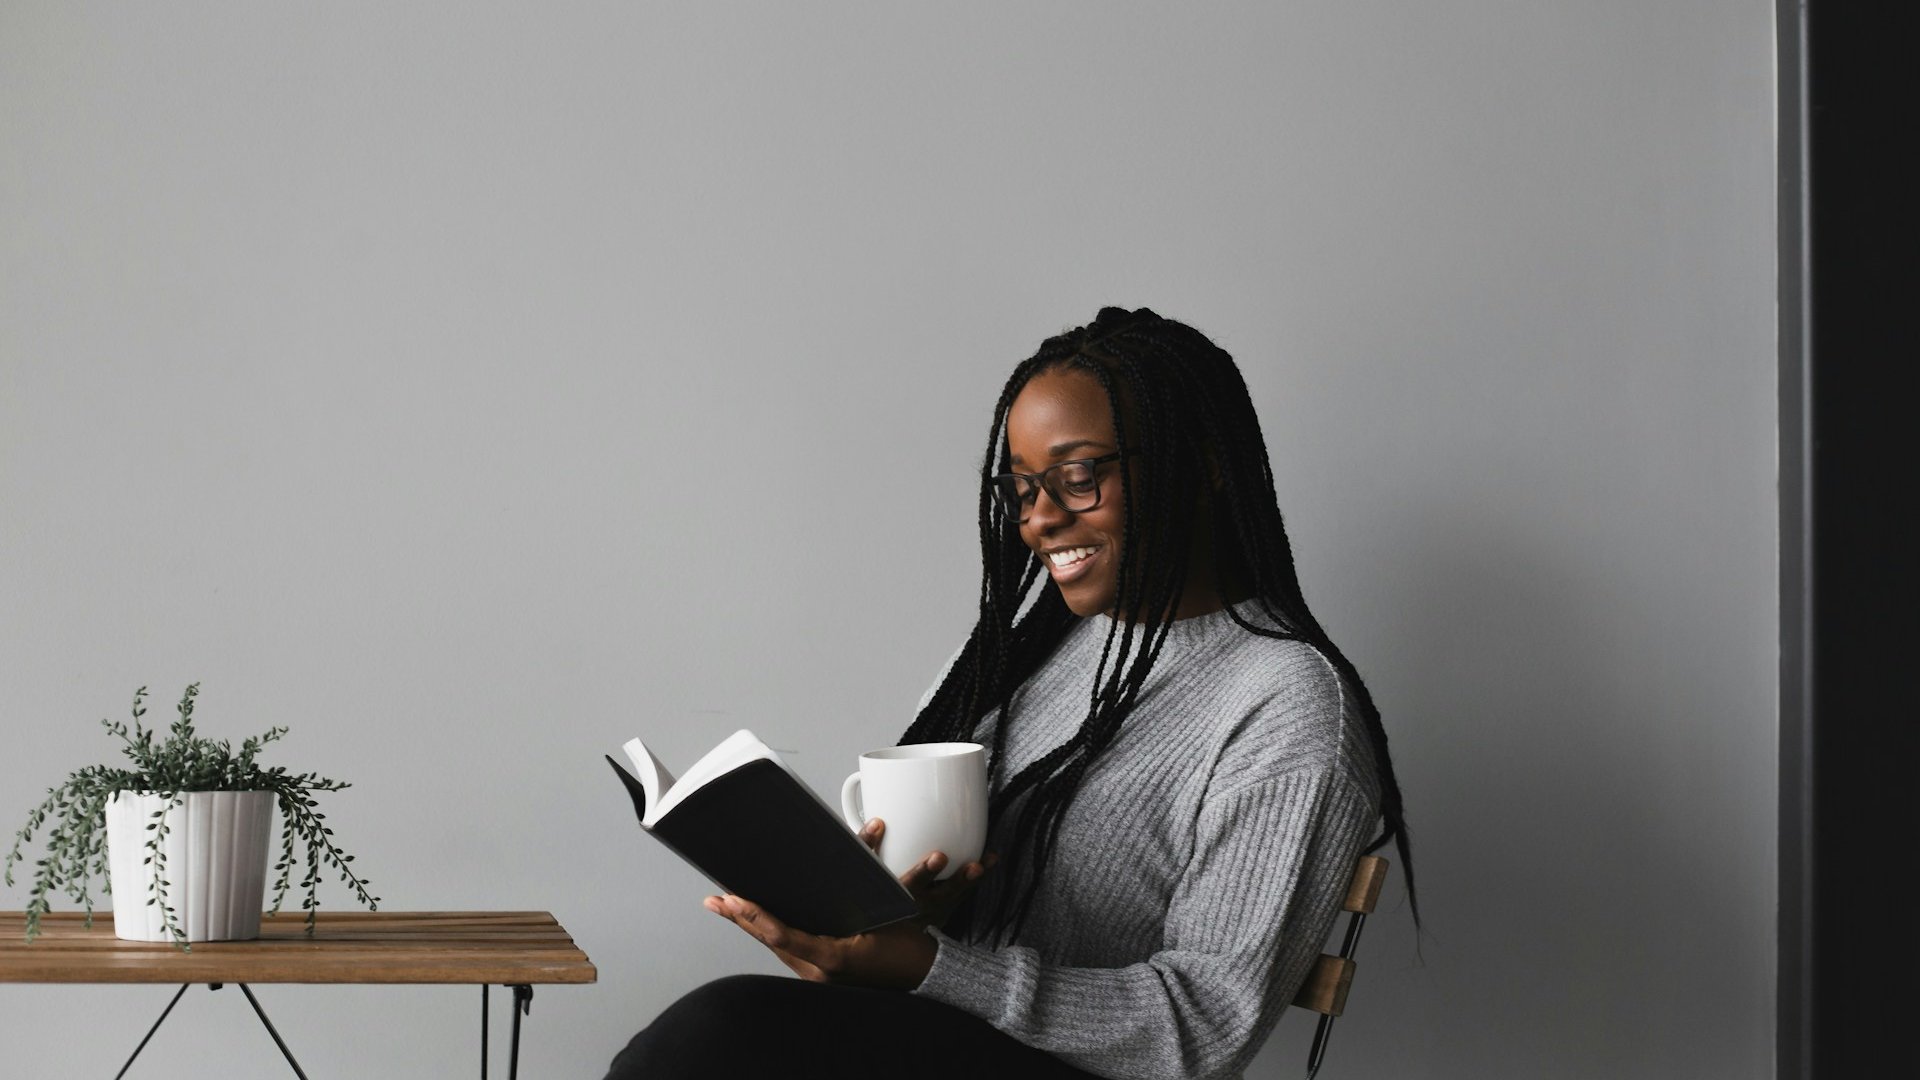 Mulher negra, com cabelos trançados e óculos, lendo um livro. Ela está sentada, sorridente, e segura uma xícara branca na outra mão.